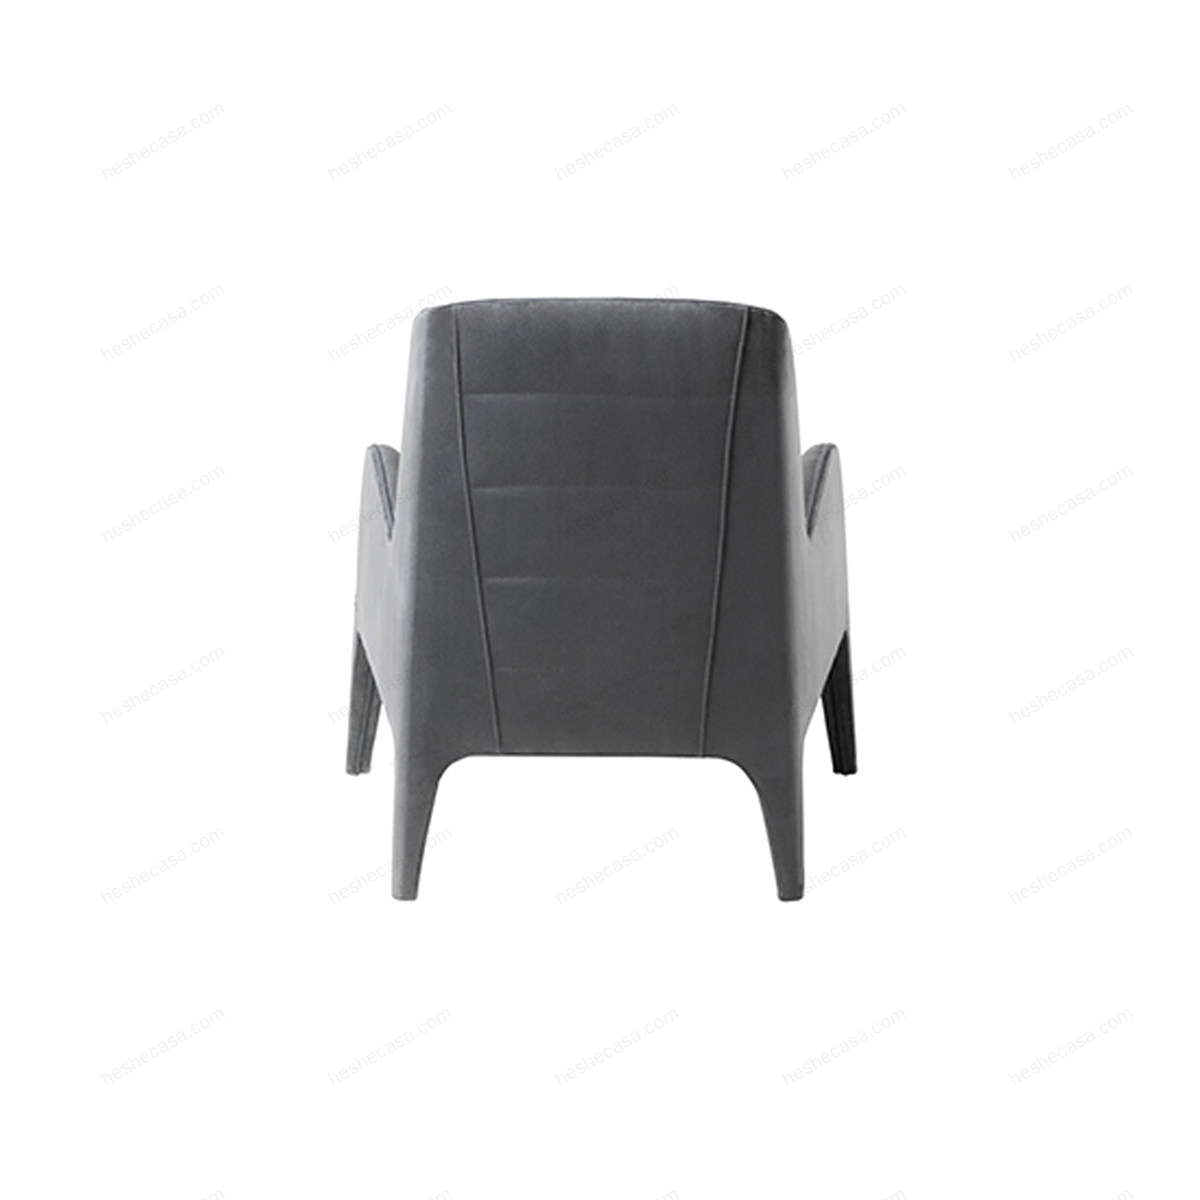 Vg520扶手椅